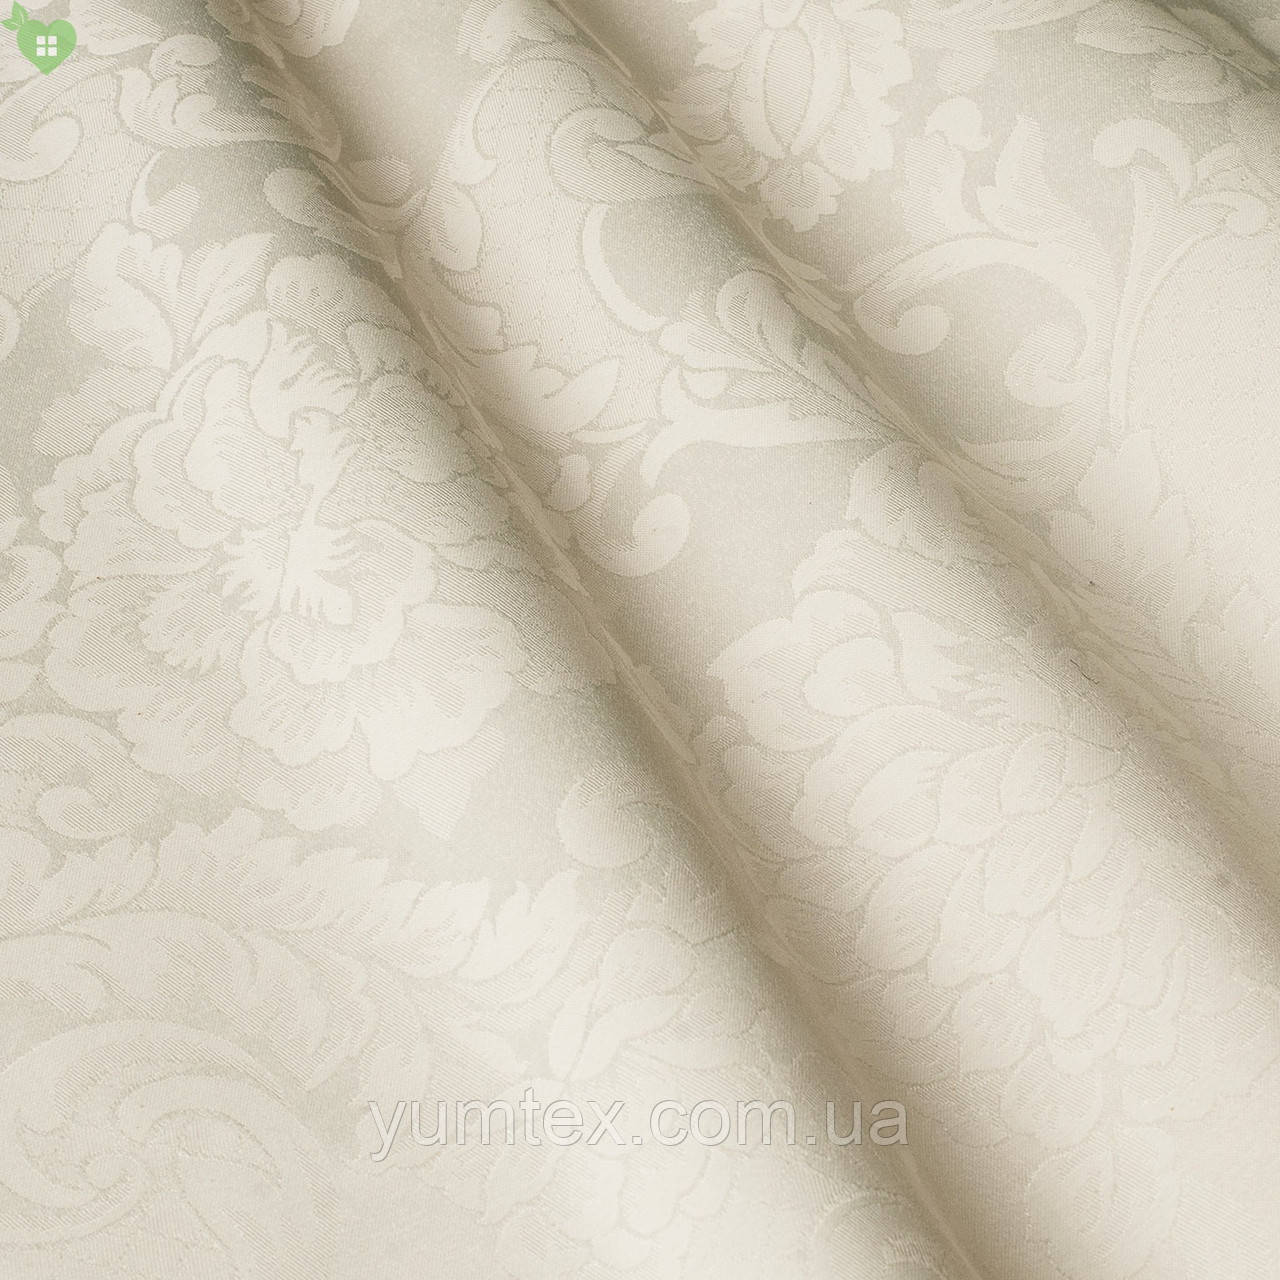 Скатертинна тканина для ресторану з вензелем кремового кольору Італія